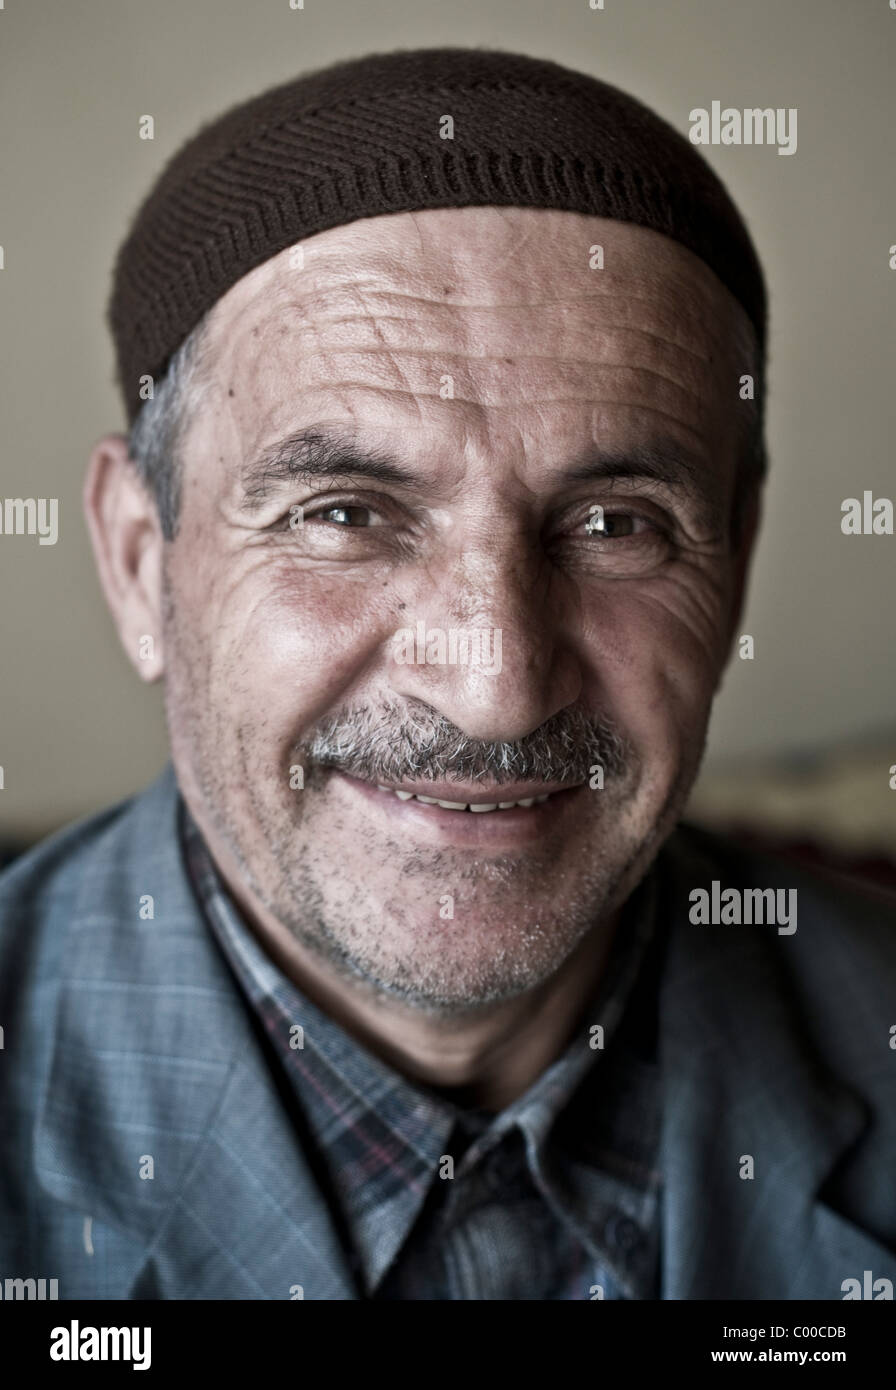 Porträt eines älteren Kurden, eines muslimischen Imam, der eine religiöse Totenmütze trägt, in Bahcesaray im östlichen Anatolien im Südosten der Türkei. Stockfoto